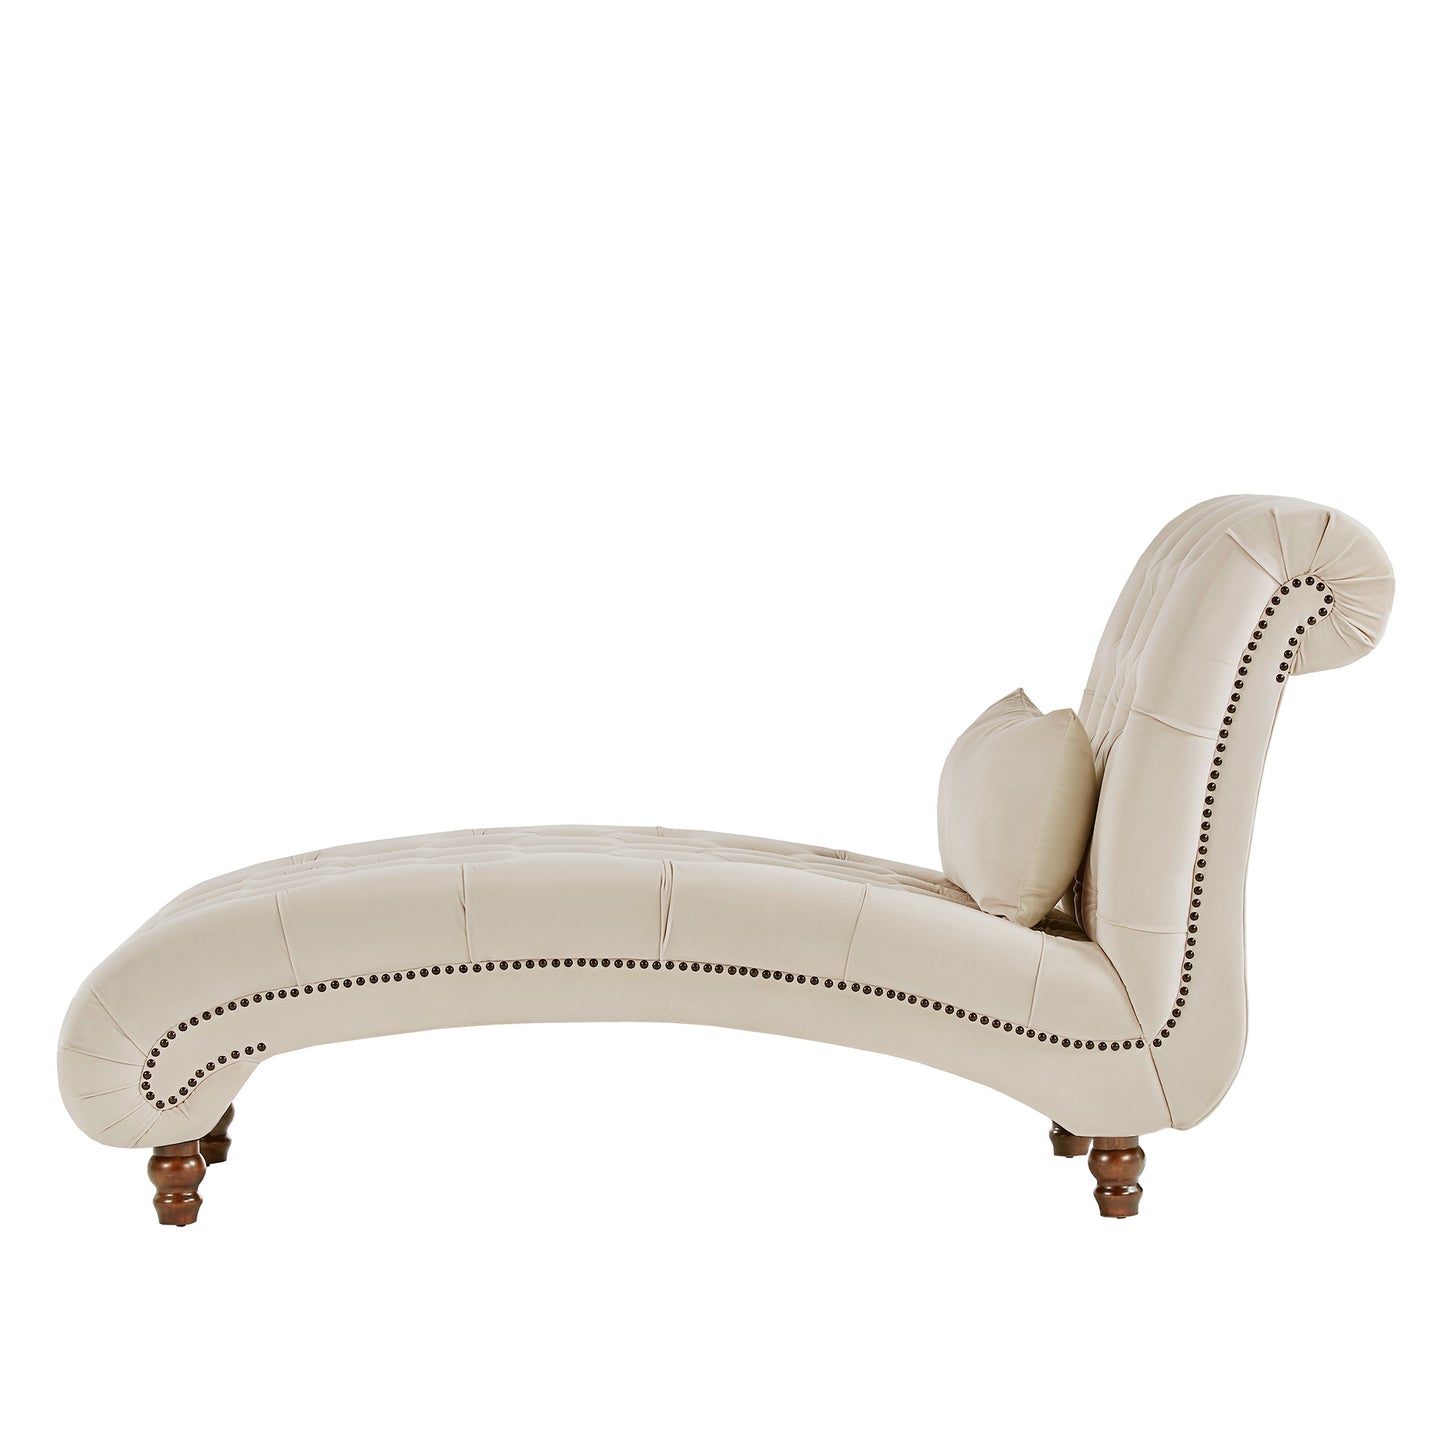 Tufted Oversized Chaise Lounge - Beige Velvet